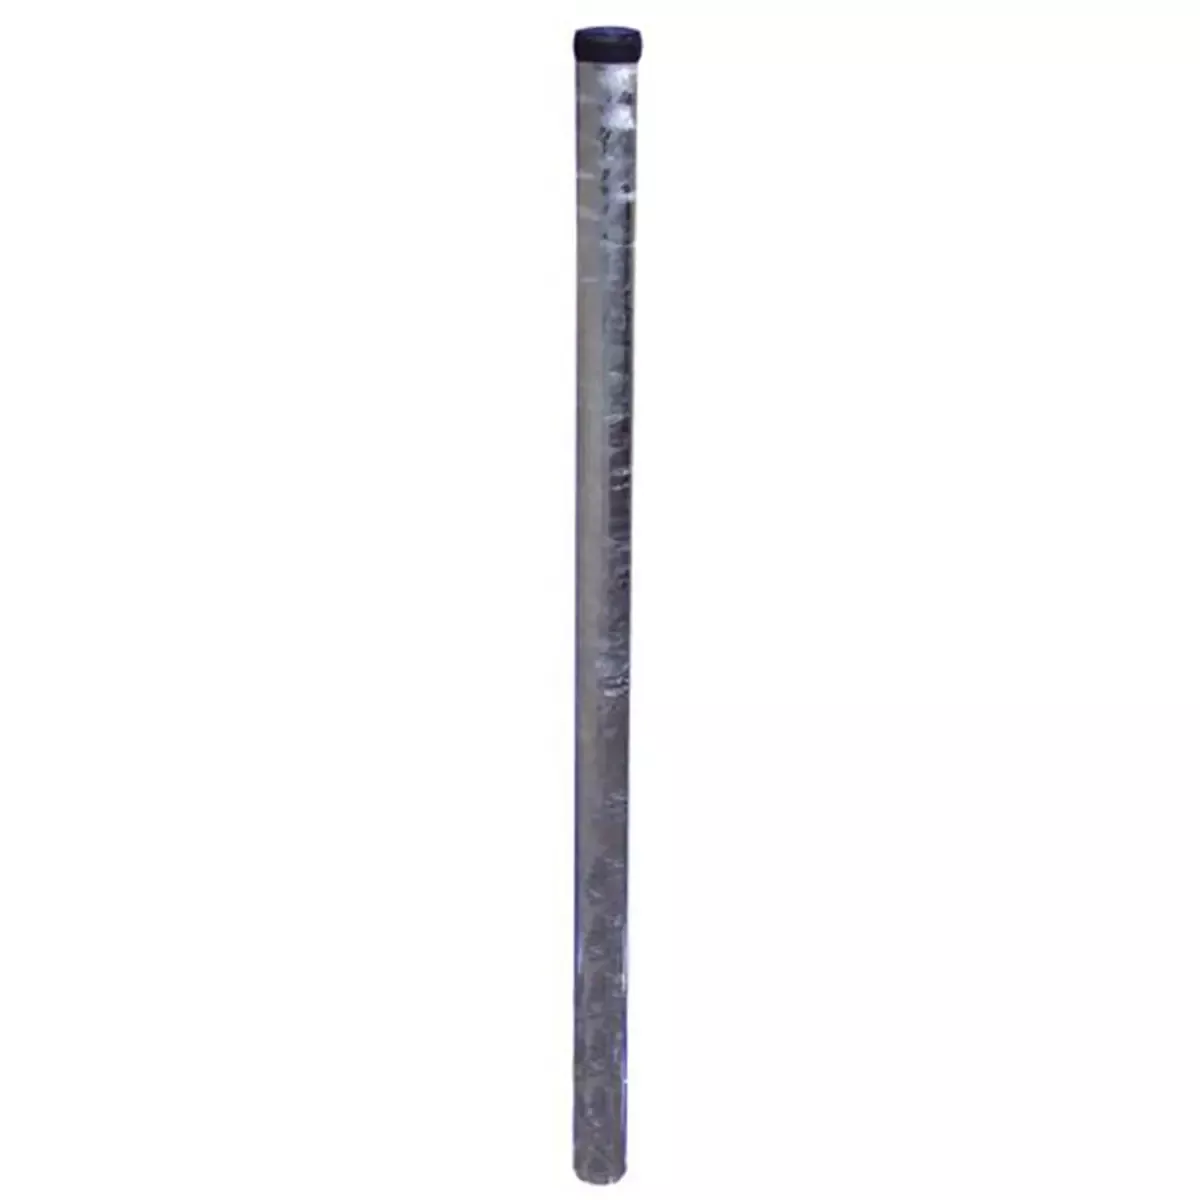 Rohrpfosten aus Stahl, ø 60 mm, Wandstärke 2,0 mm, Länge 3.250 mm, nach IVZ S132